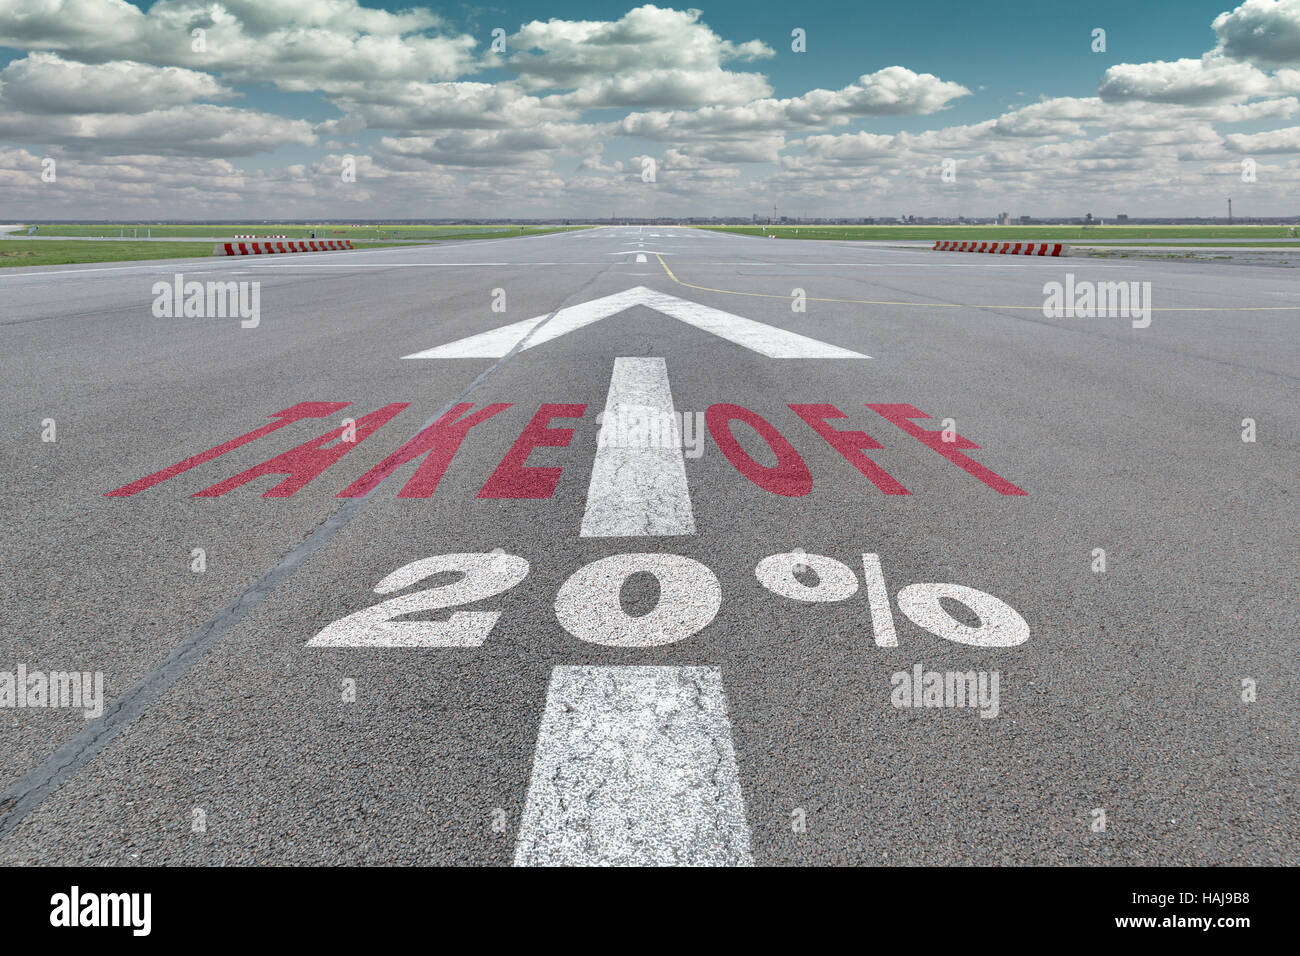 Start-und Landebahn des Flughafens mit Pfeil Leitlinie, ausziehen und 20 Prozent-Zeichen gedruckt auf dem asphalt Stockfoto